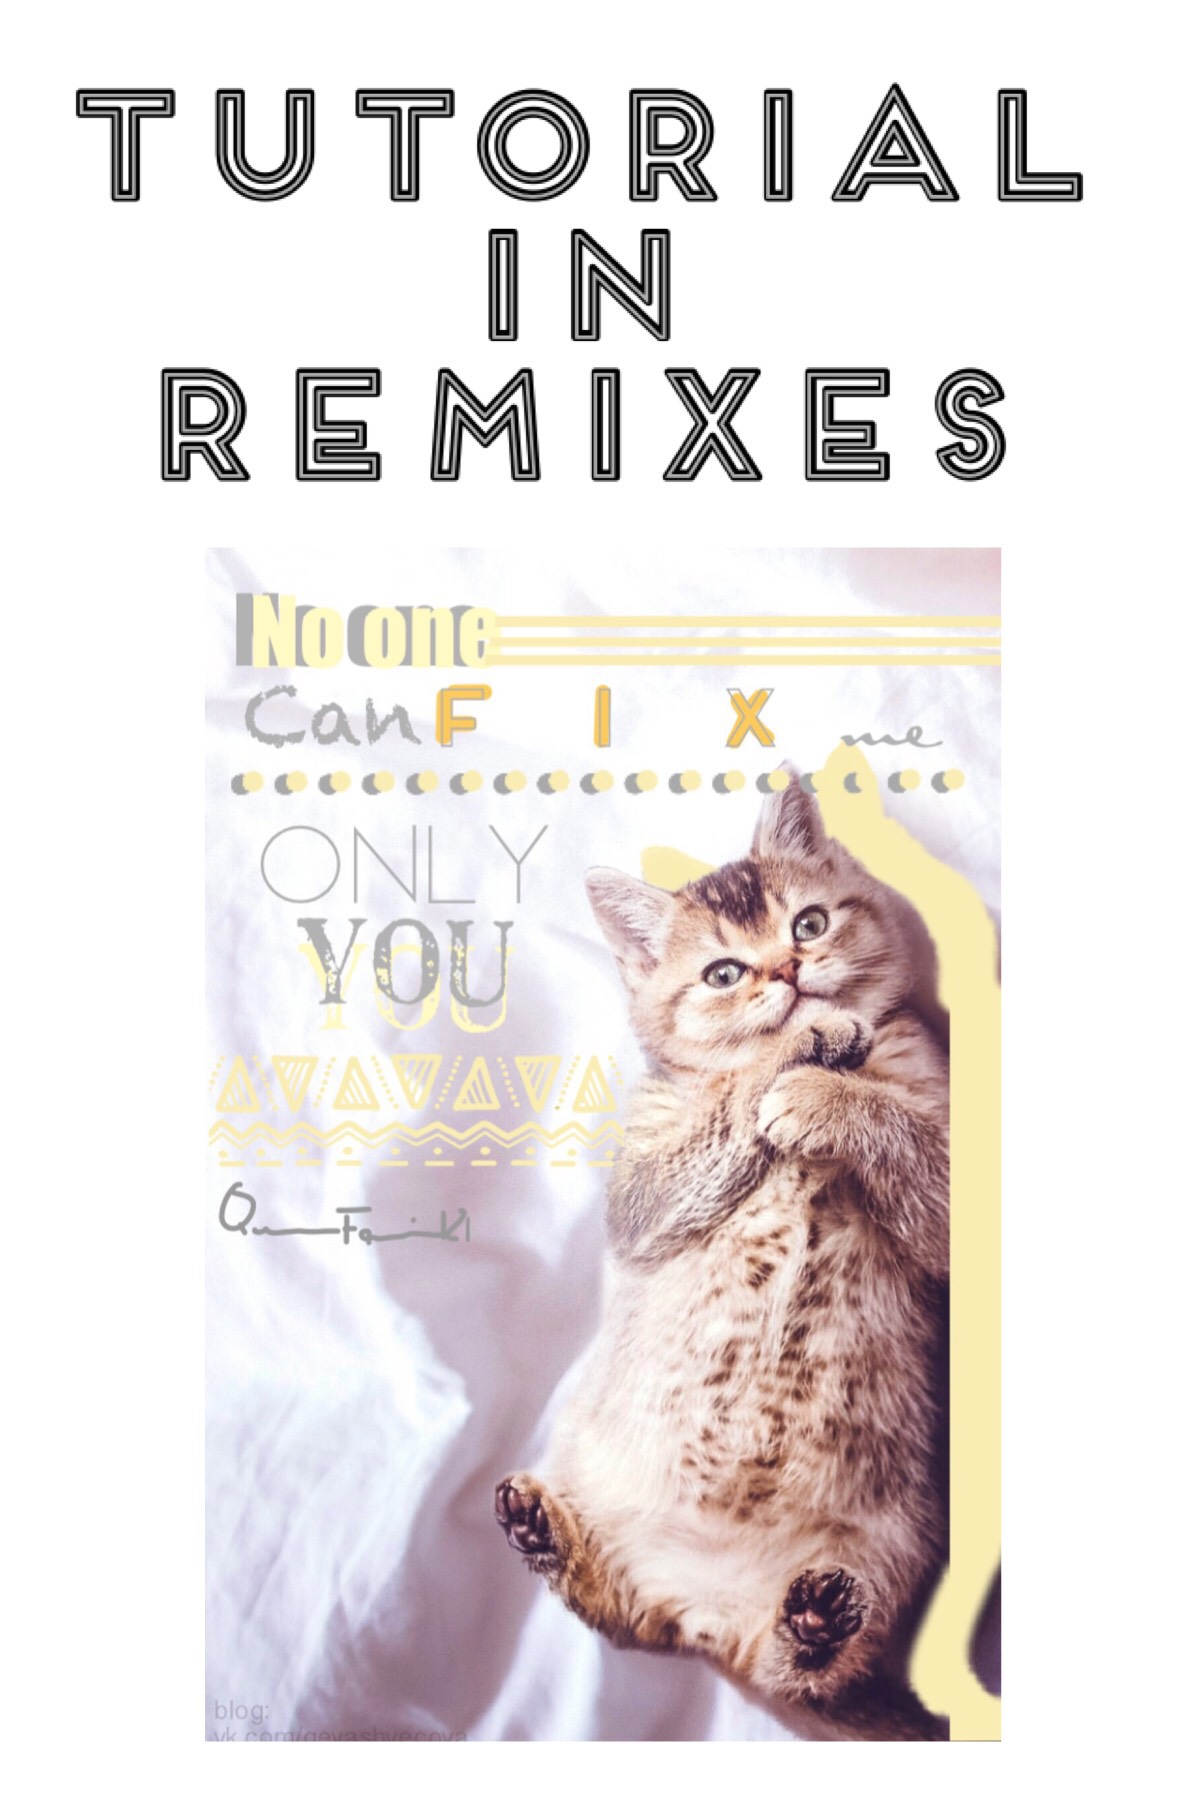 Check the remixes